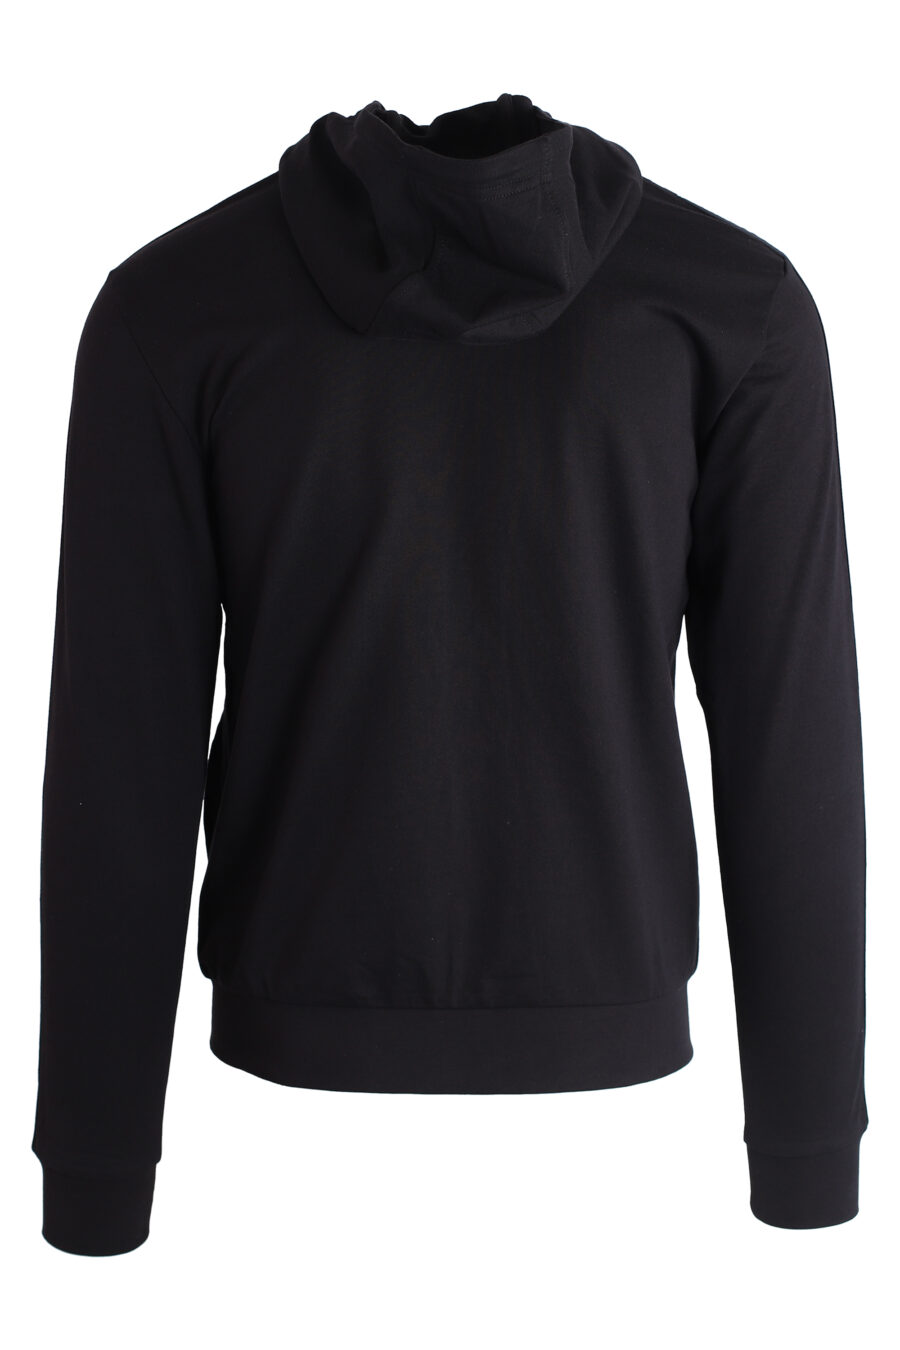 Camisola com capuz preta com fecho de correr e logótipo nos lados - IMG 3191